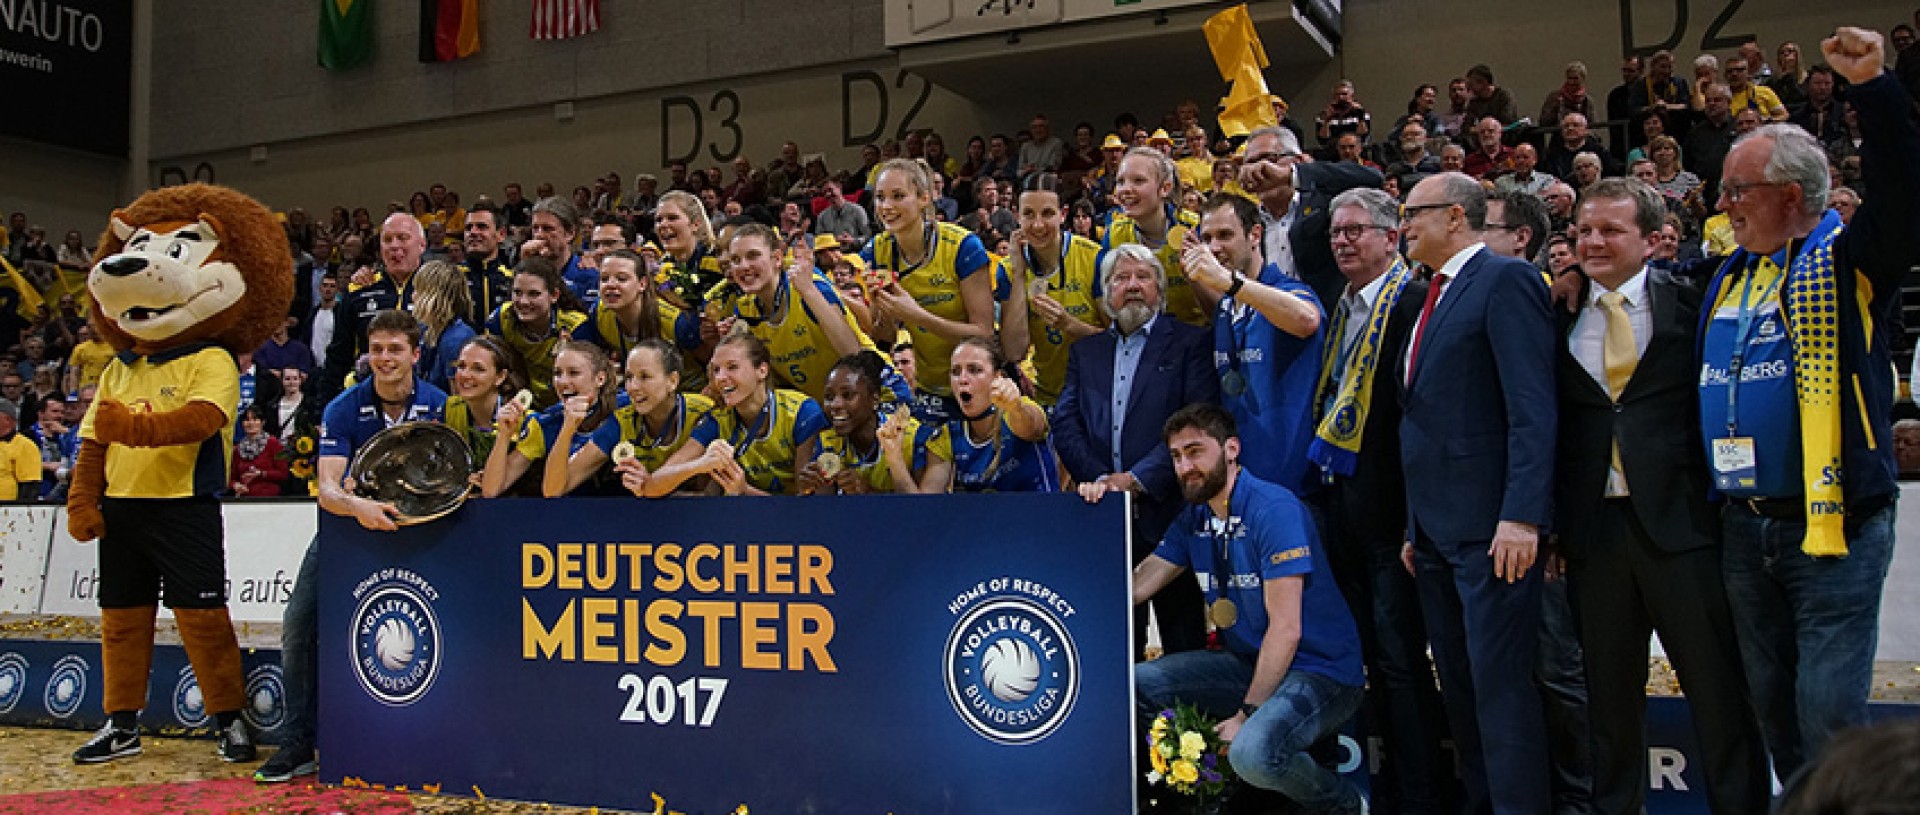 Der SSC Palmberg Schwerin ist Deutscher Meister 2016/17 (Foto: SSC / Michael Dittmer)